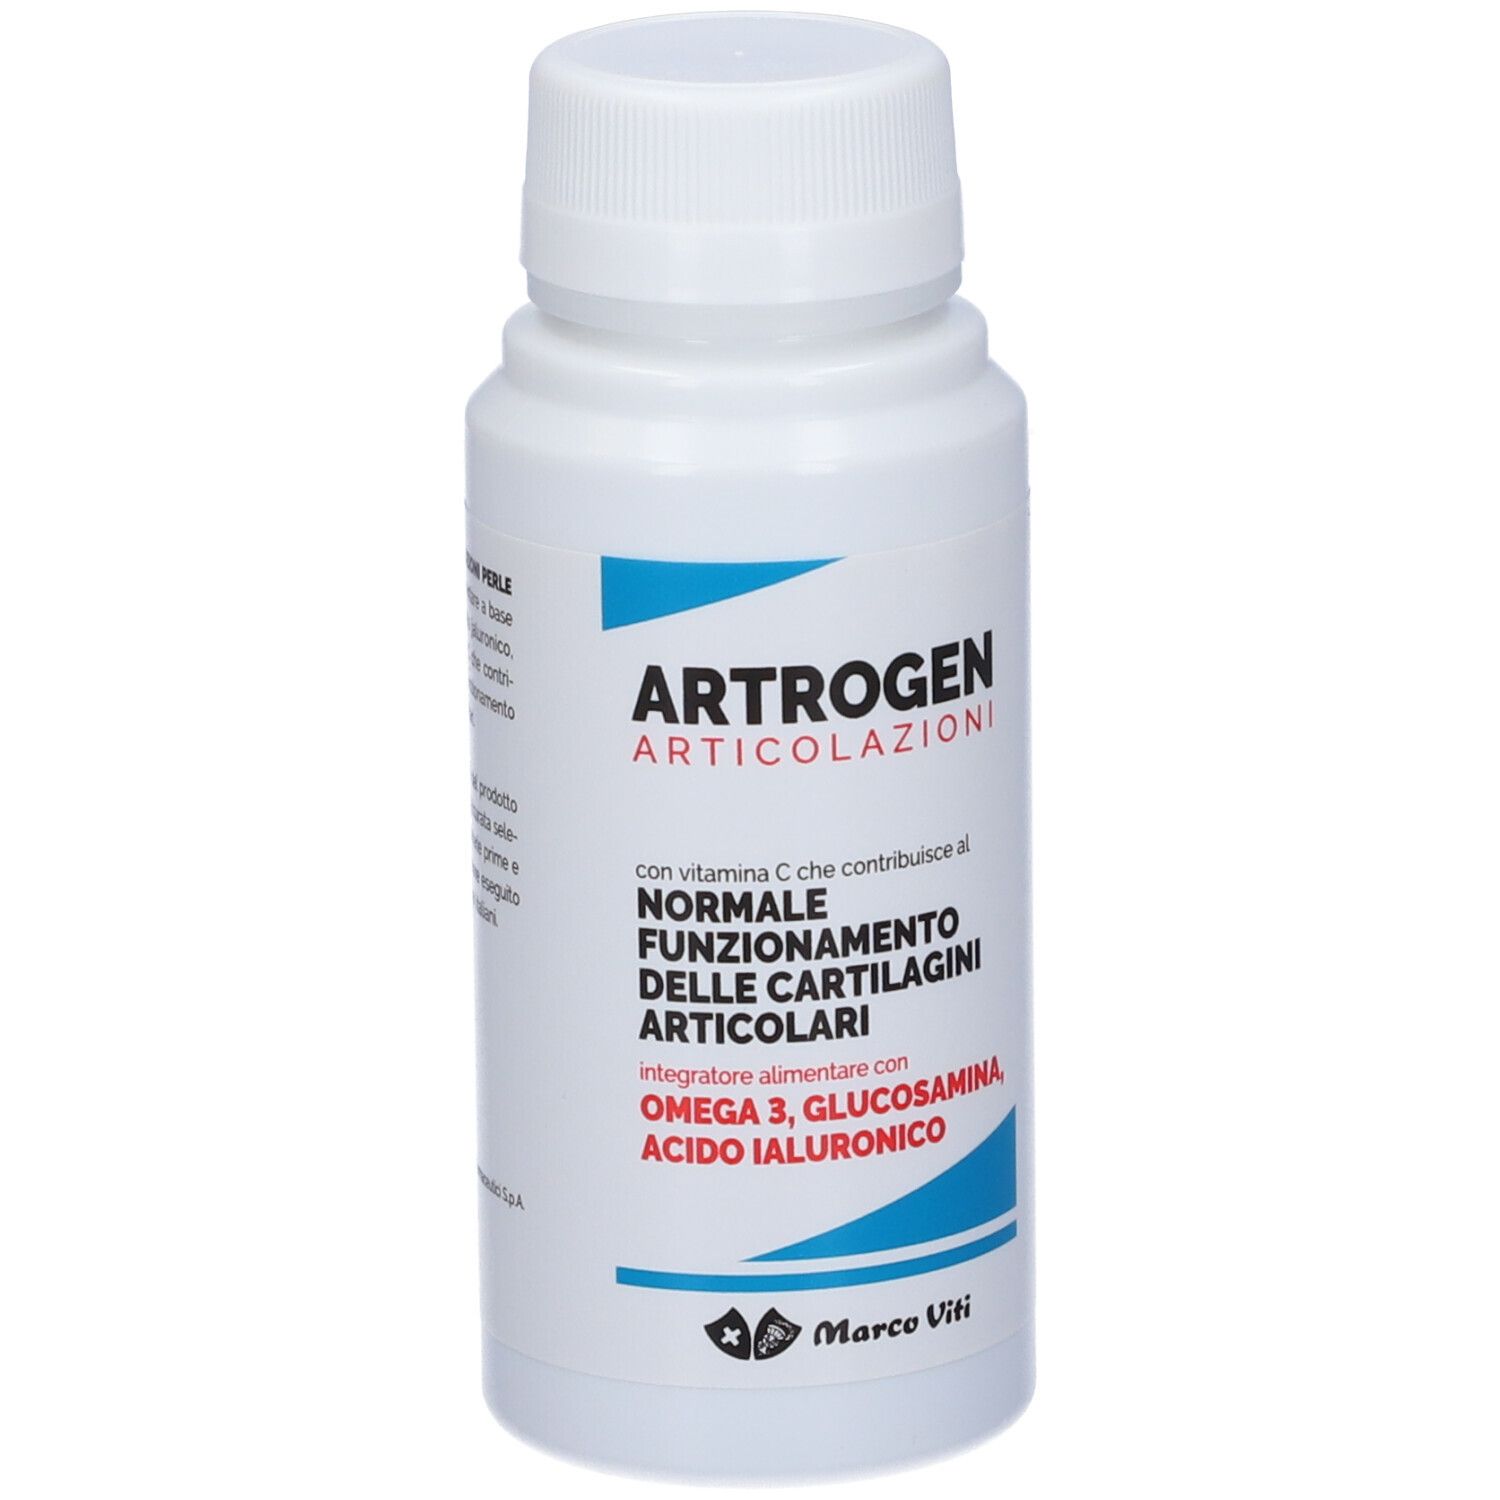 Artrogen Articolazioni perle